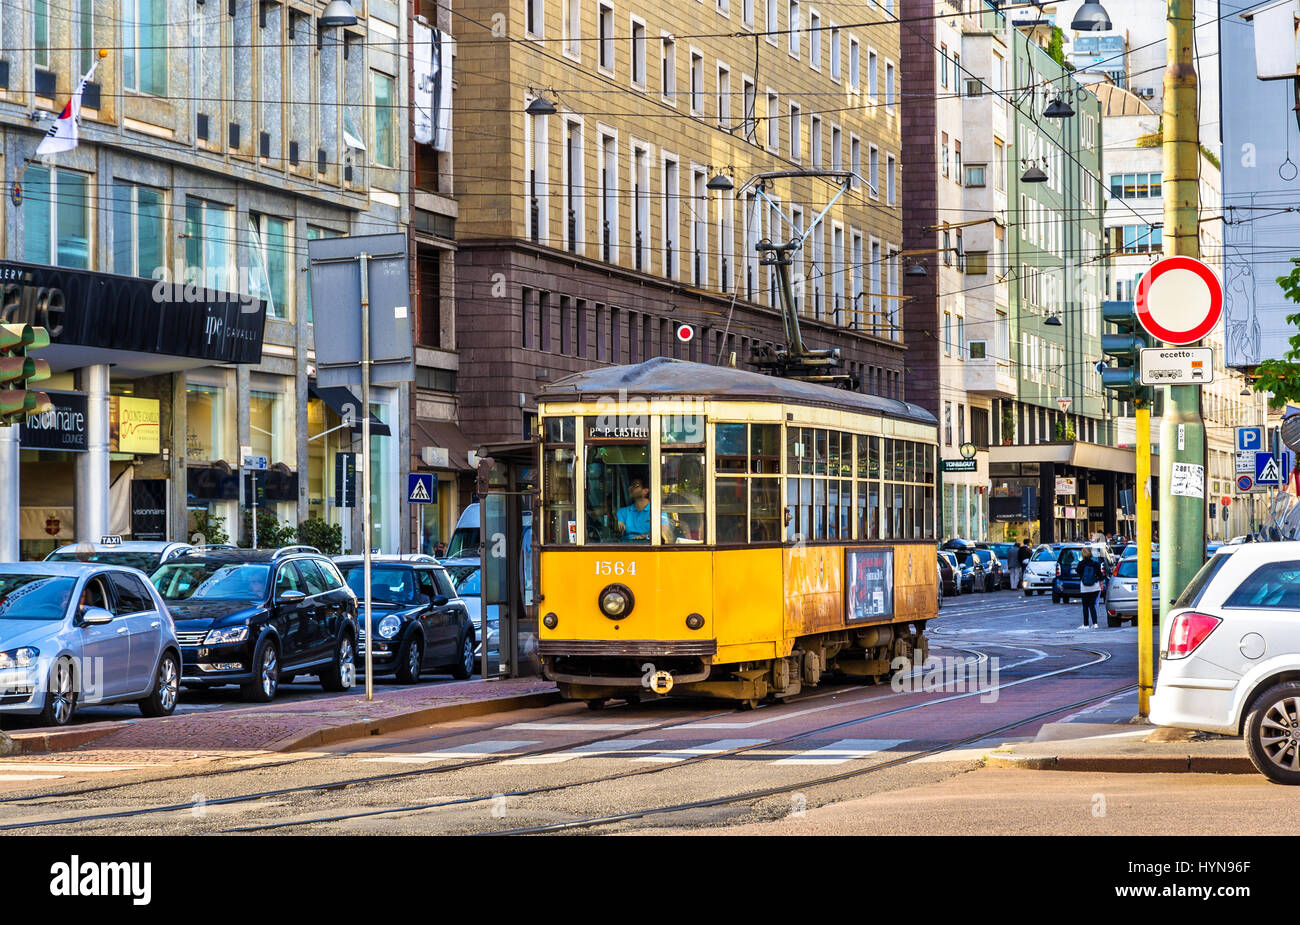 Milano, Italia - 8 Maggio 2014: il vecchio tram nel centro storico di Milano. In funzione dal 1881, la rete tranviaria è ora di 170 chilometri Foto Stock